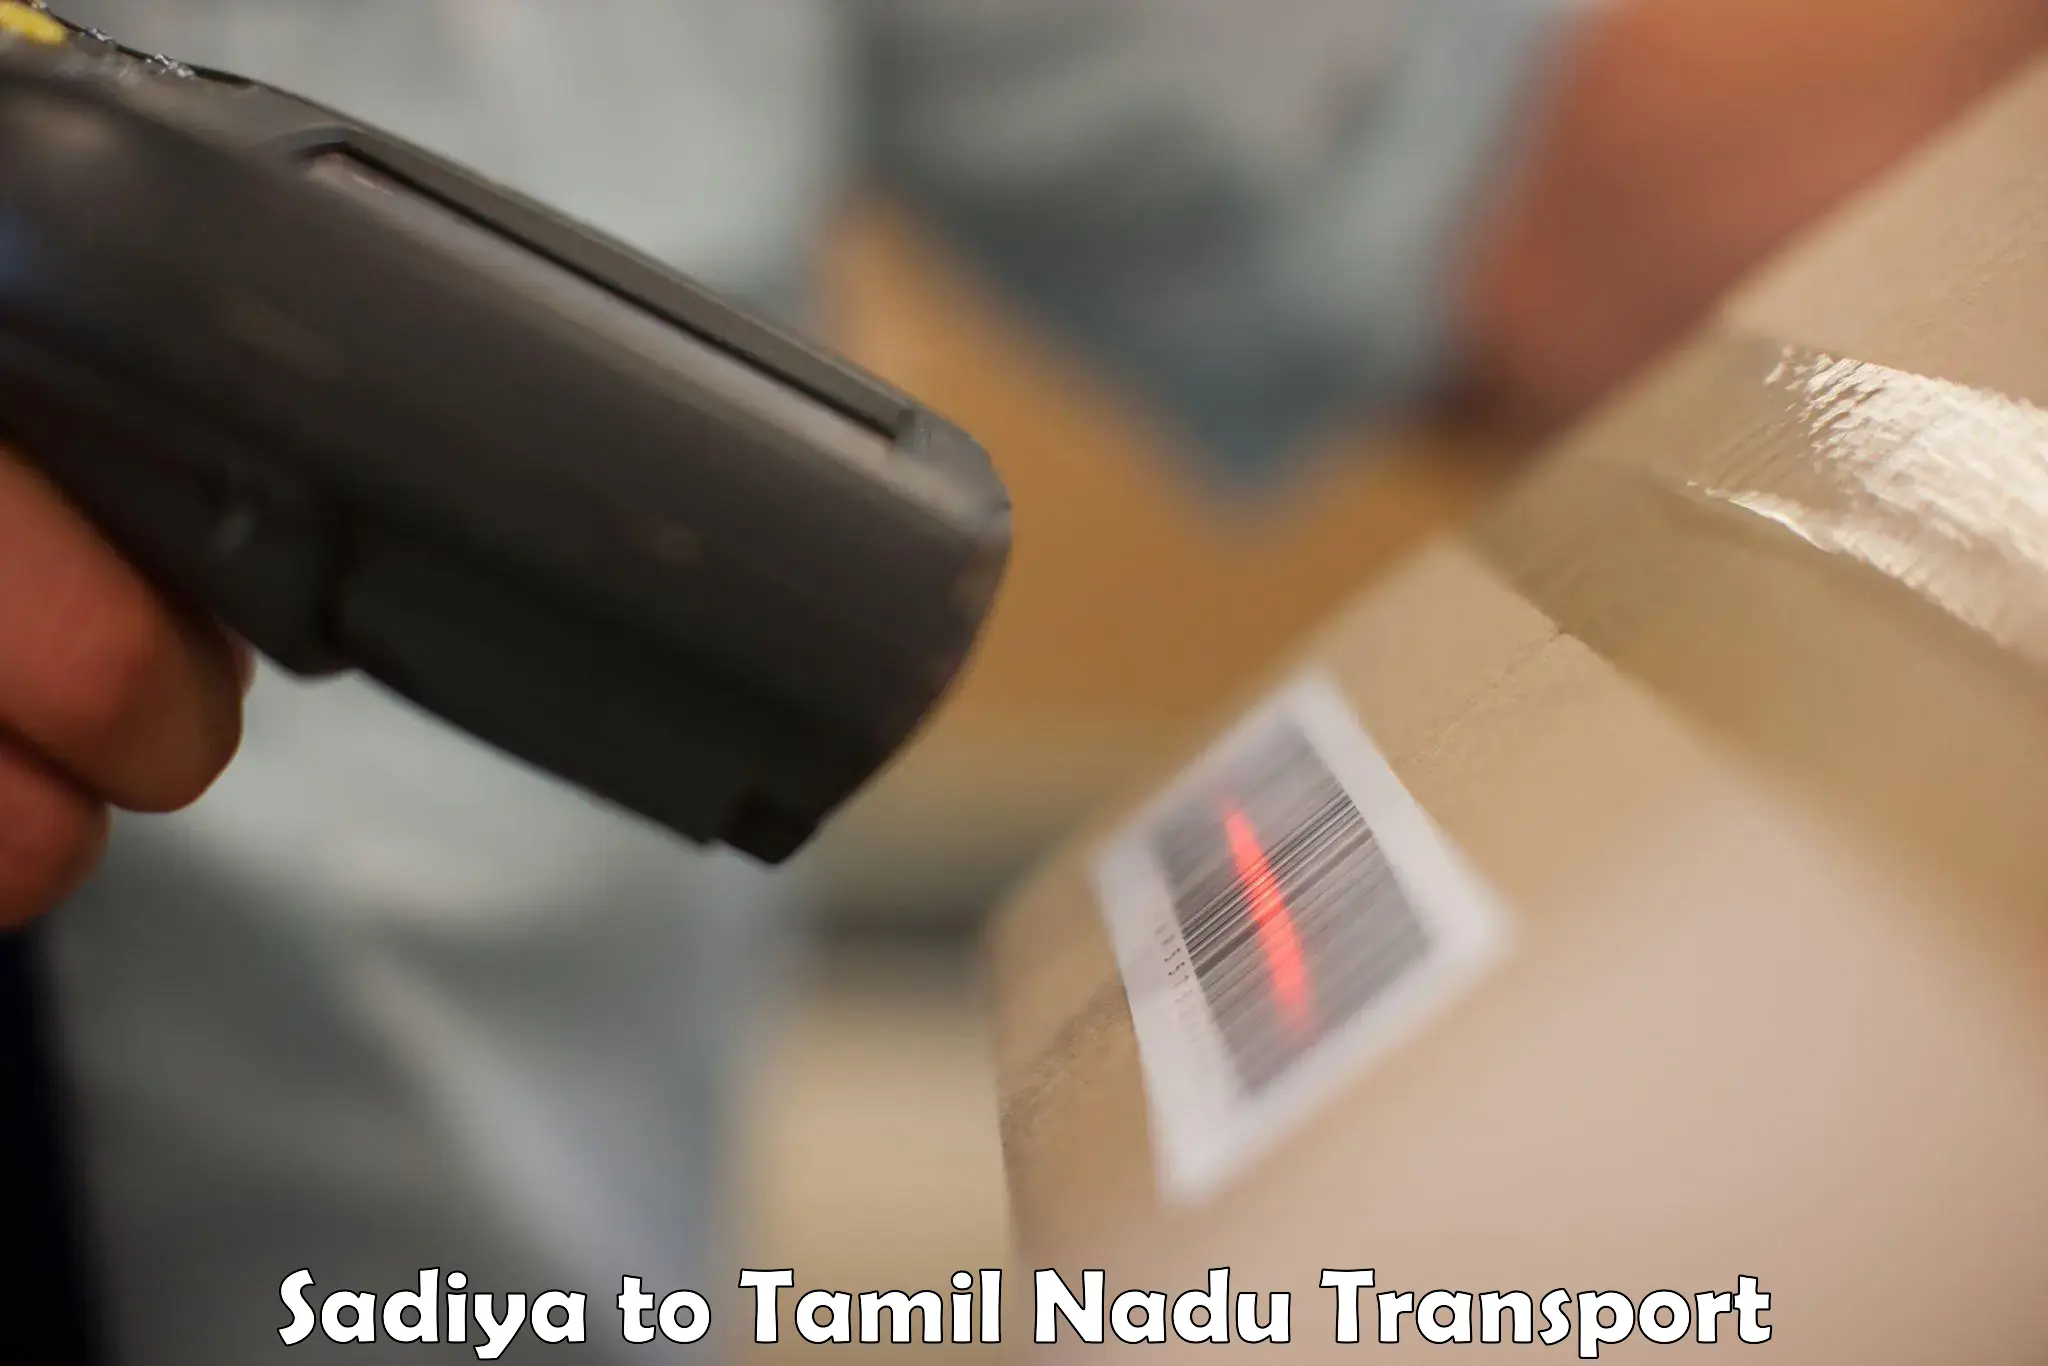 Intercity transport Sadiya to Anna University Chennai